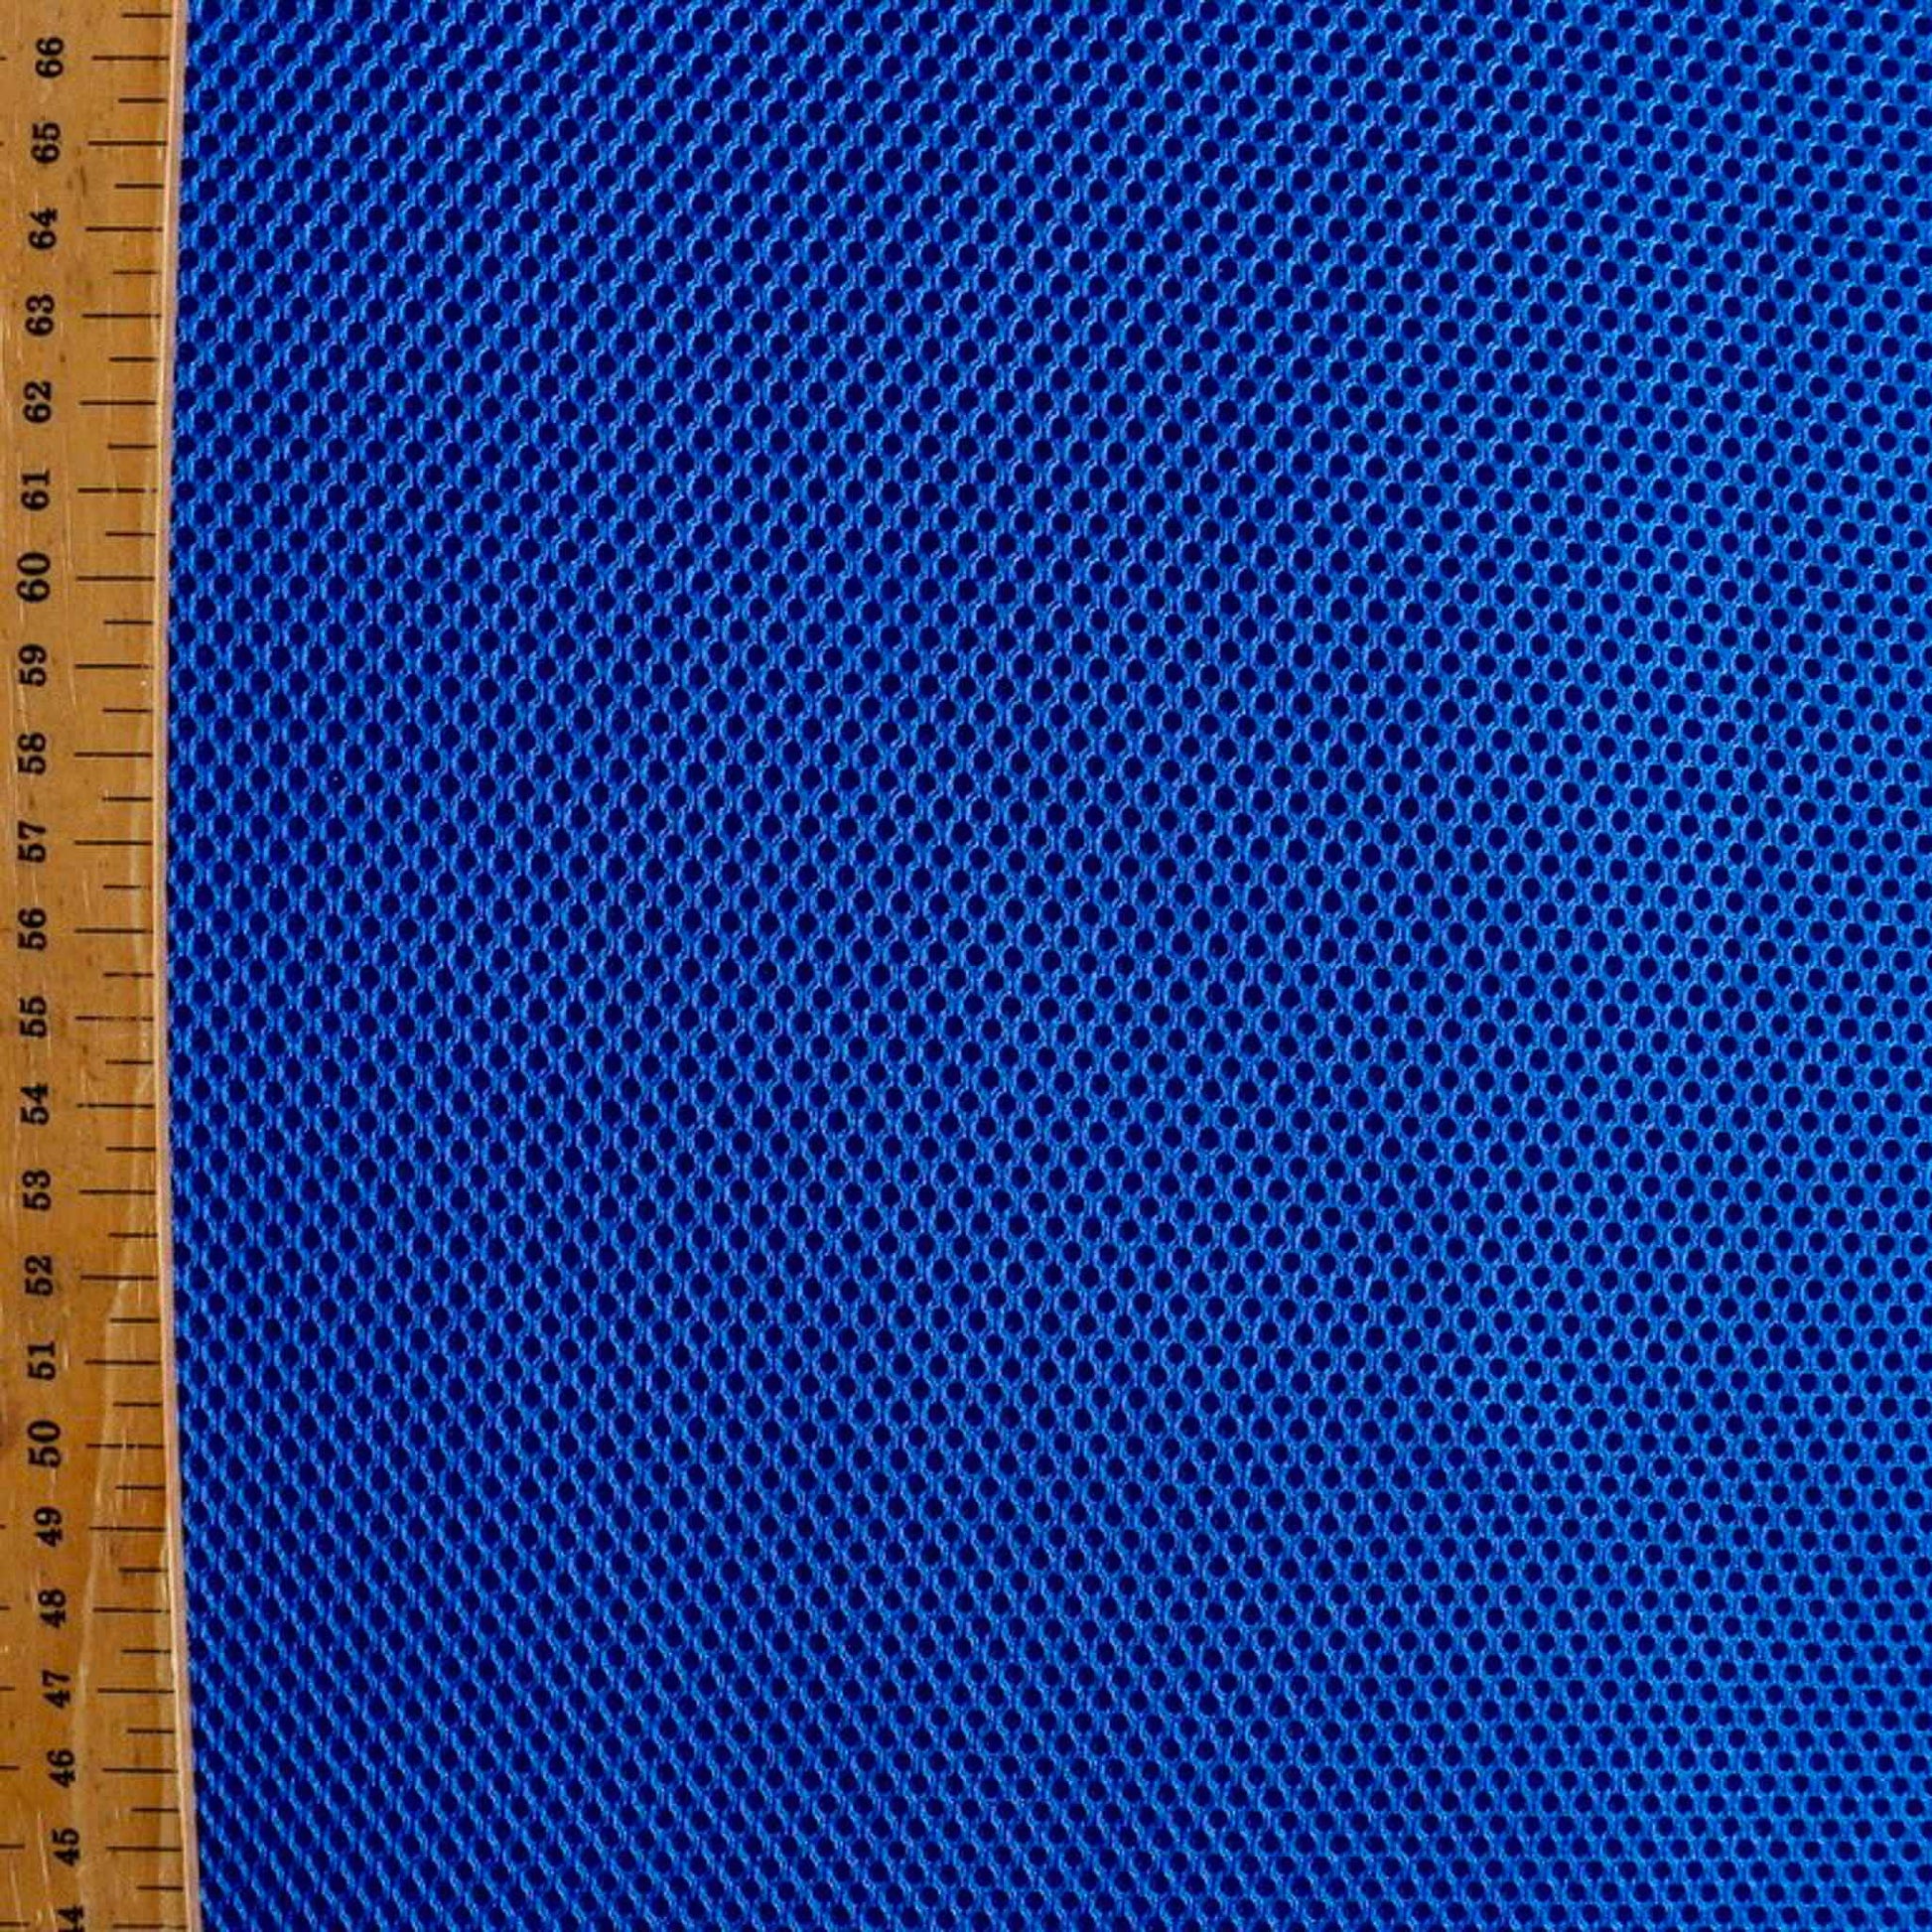 metre airtex spacer mesh sports fabric in blue